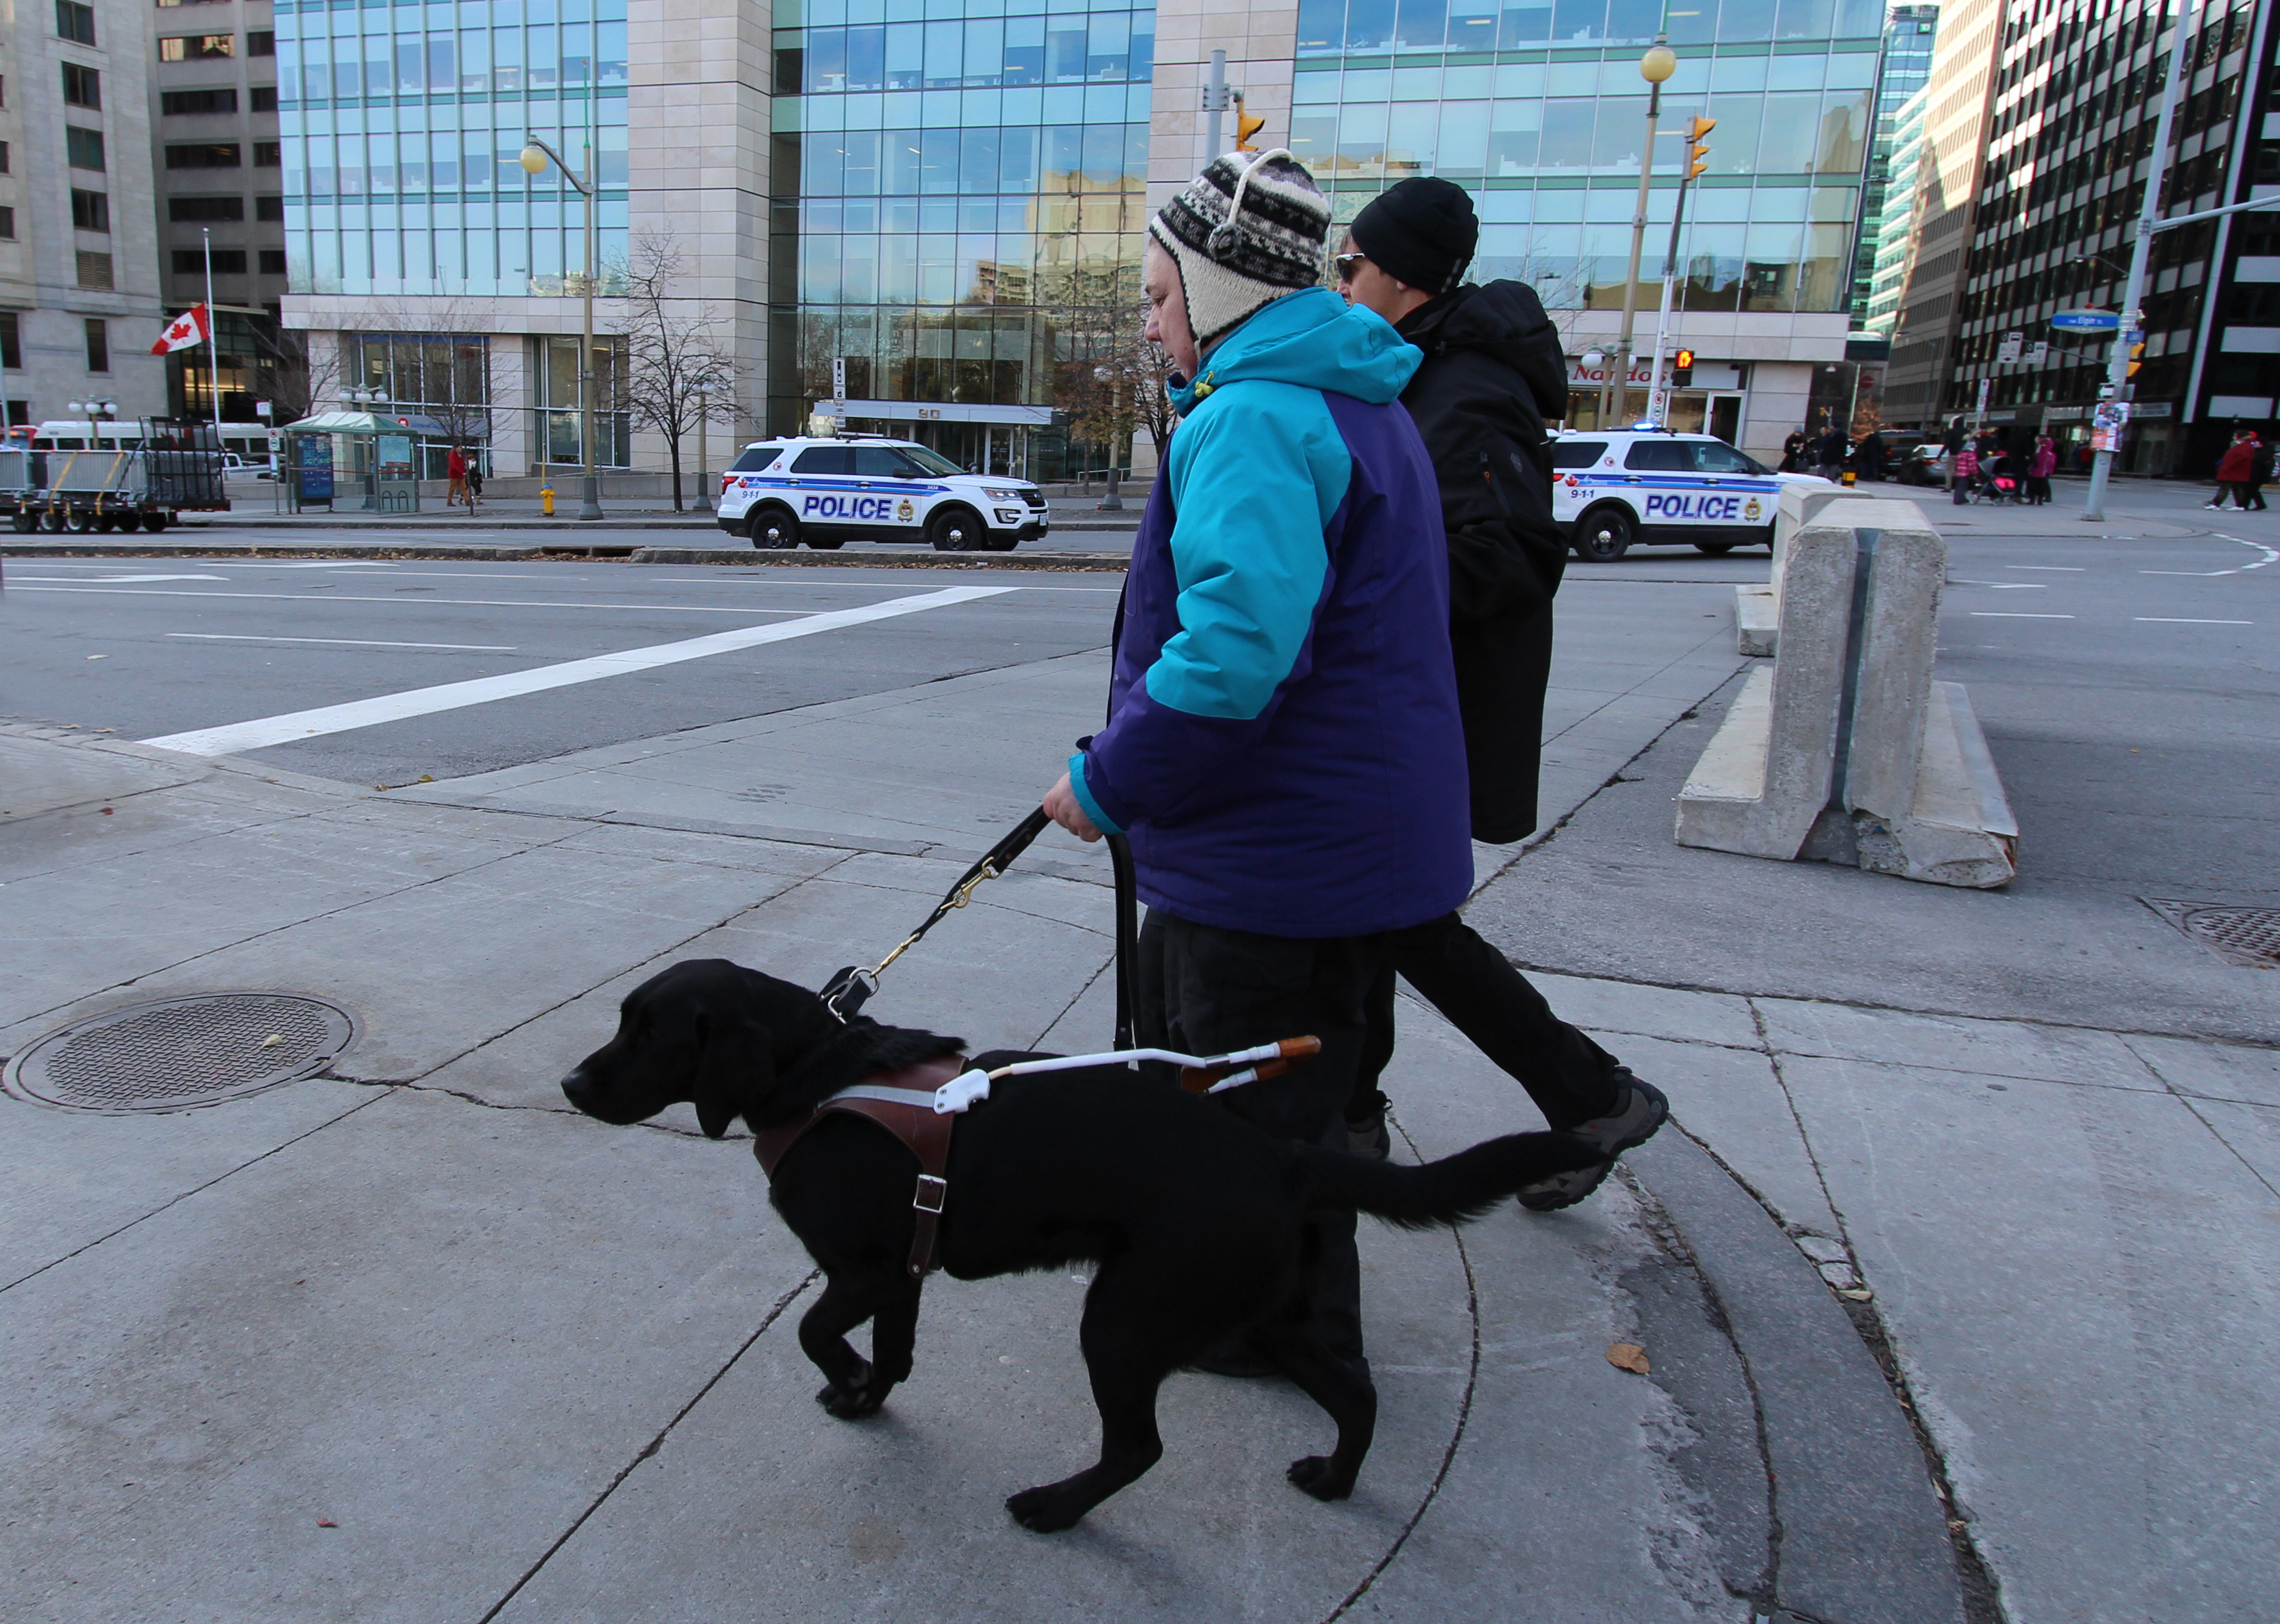 Sandy et de son chien-guide Keller, marchant sur un trottoir dans un quartier animé du centre-ville par une journée froide.